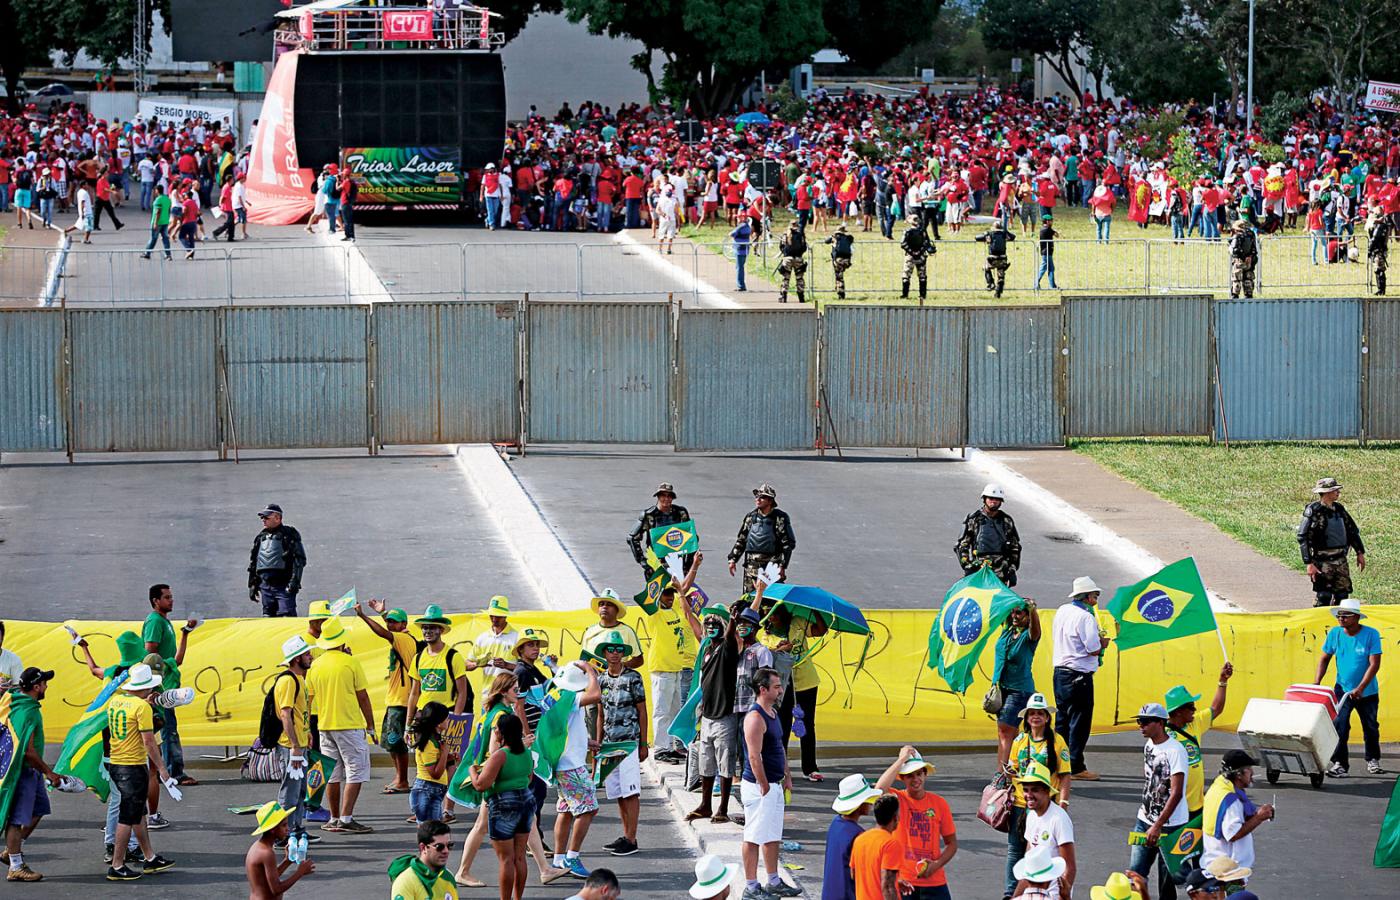 Zgromadzonych pod parlamentem zwolenników i przeciwników prezydent Dilmy Rousseff trzeba było rozdzielić płotem i kordonem policji.